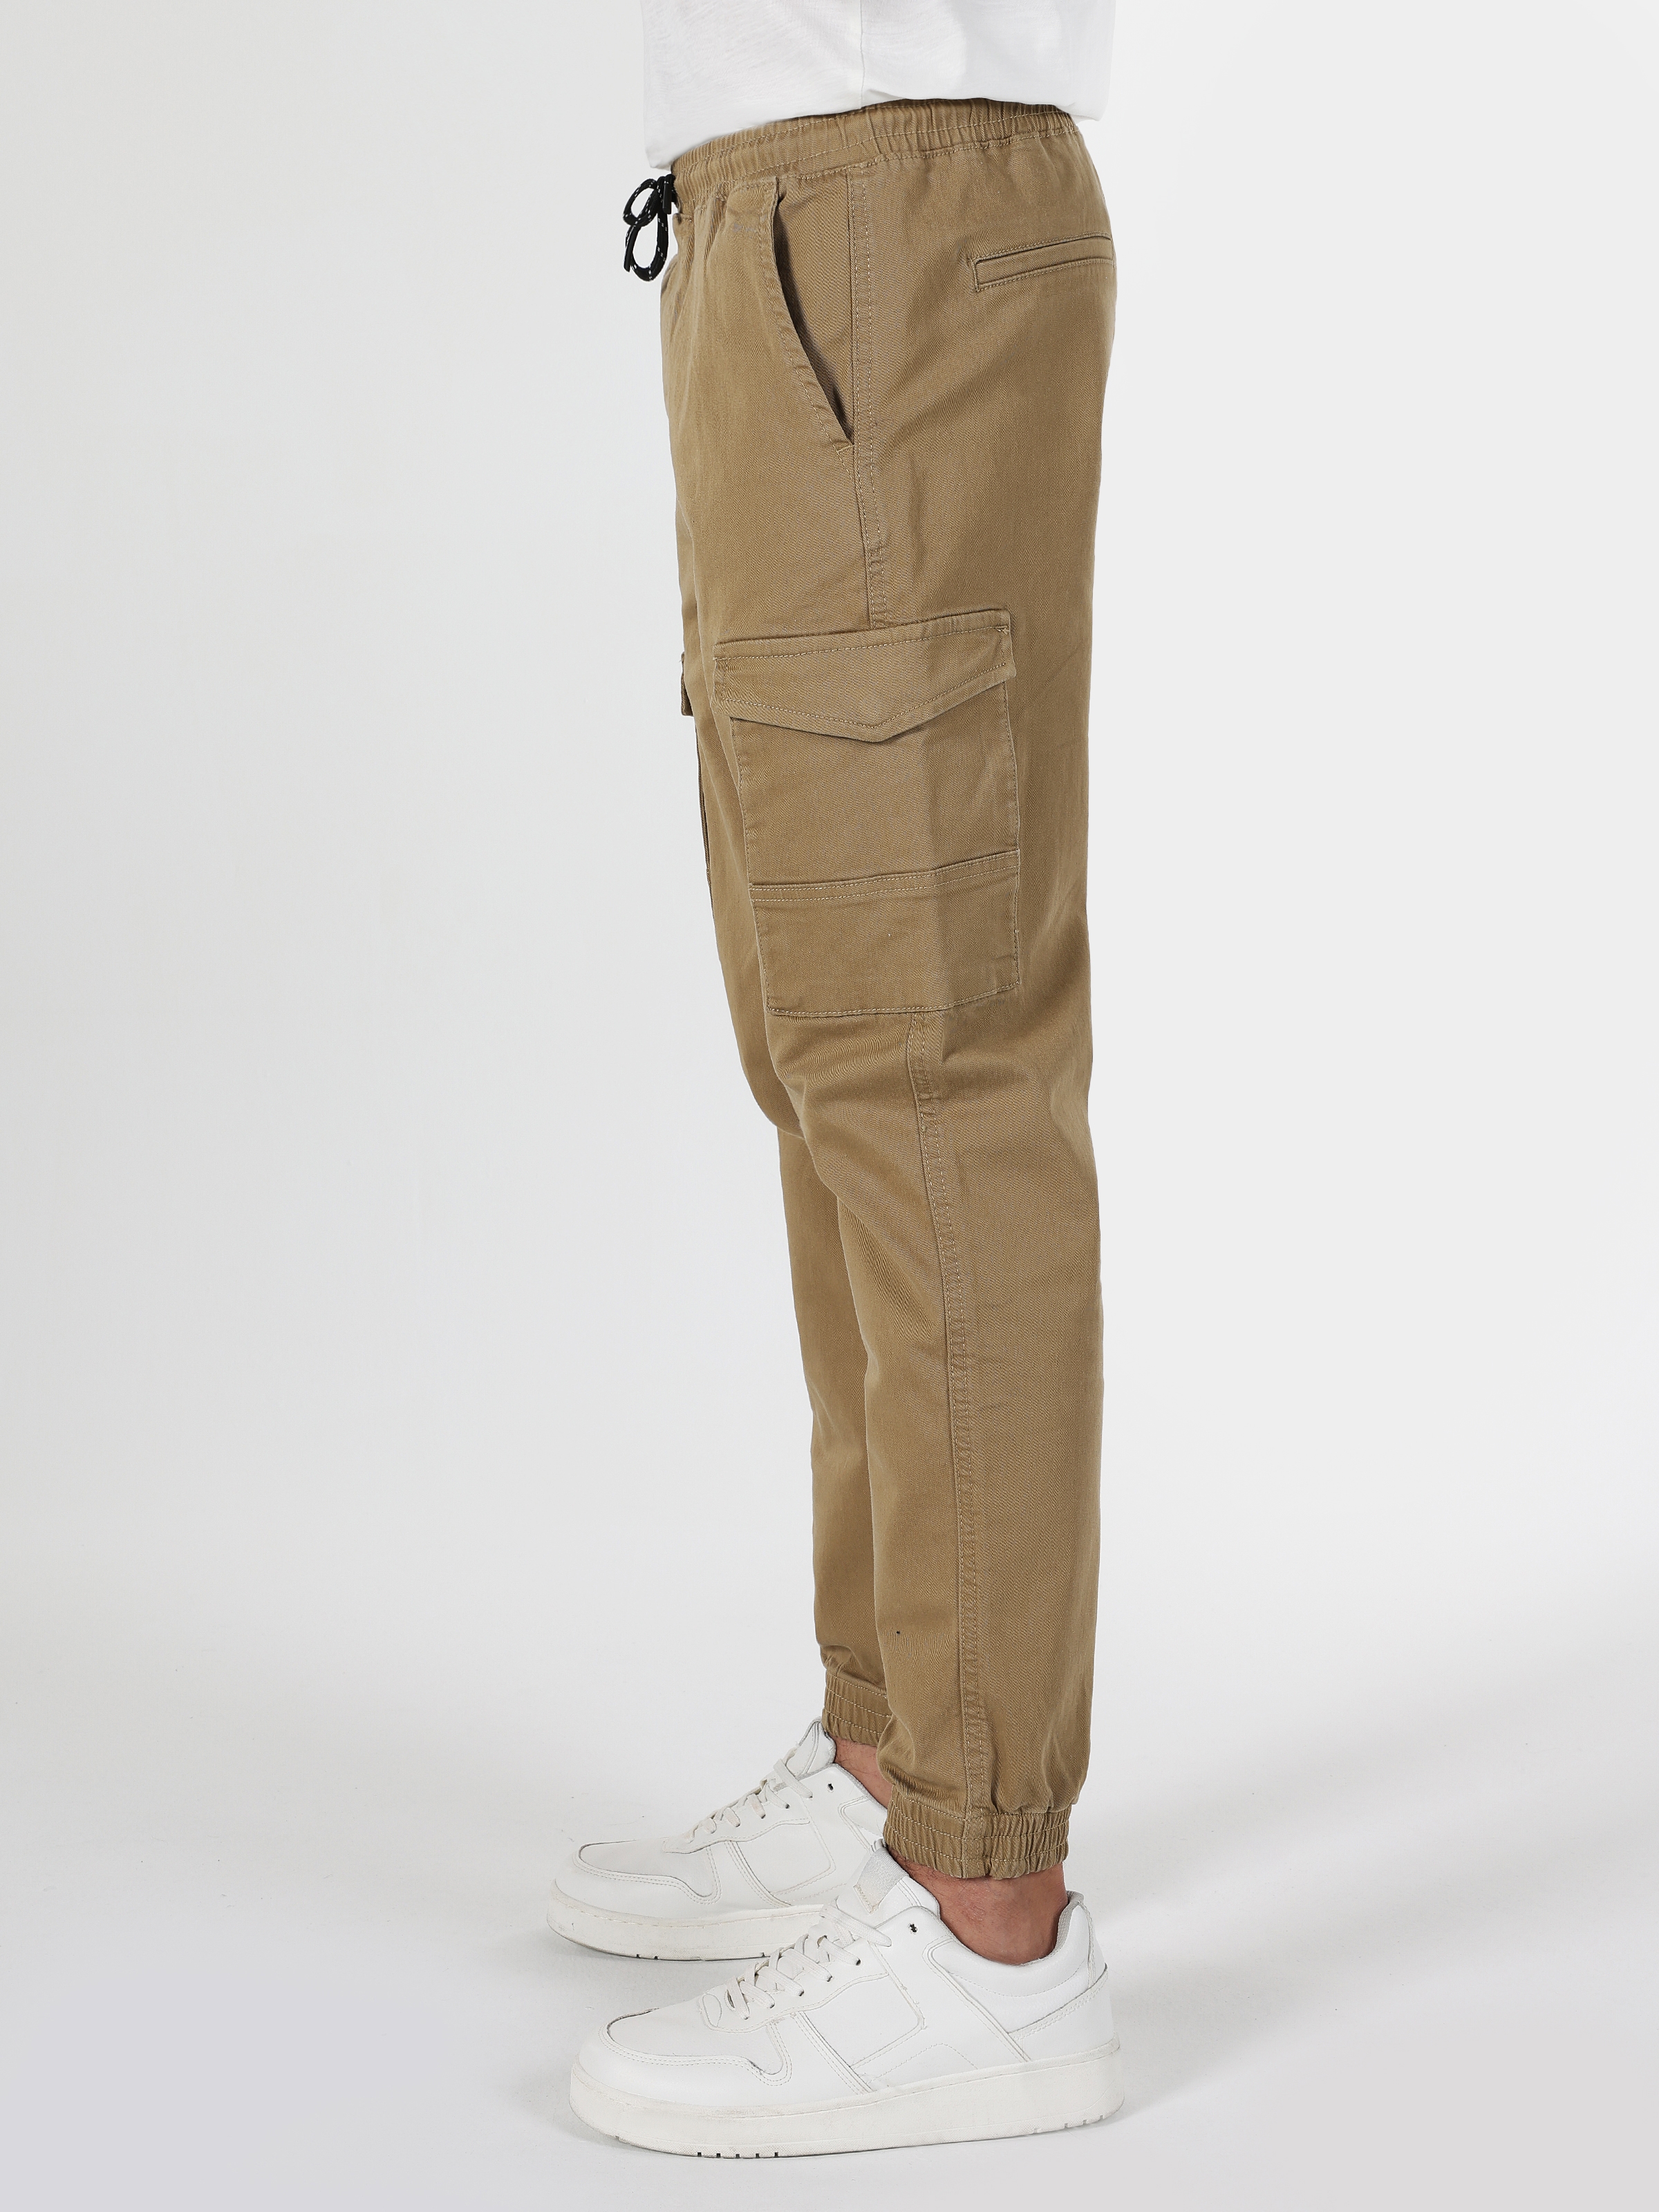 Afficher les détails de Pantalon Homme Marron Coupe Slim Taille Moyenne Poche Cargo Jambe Élastique